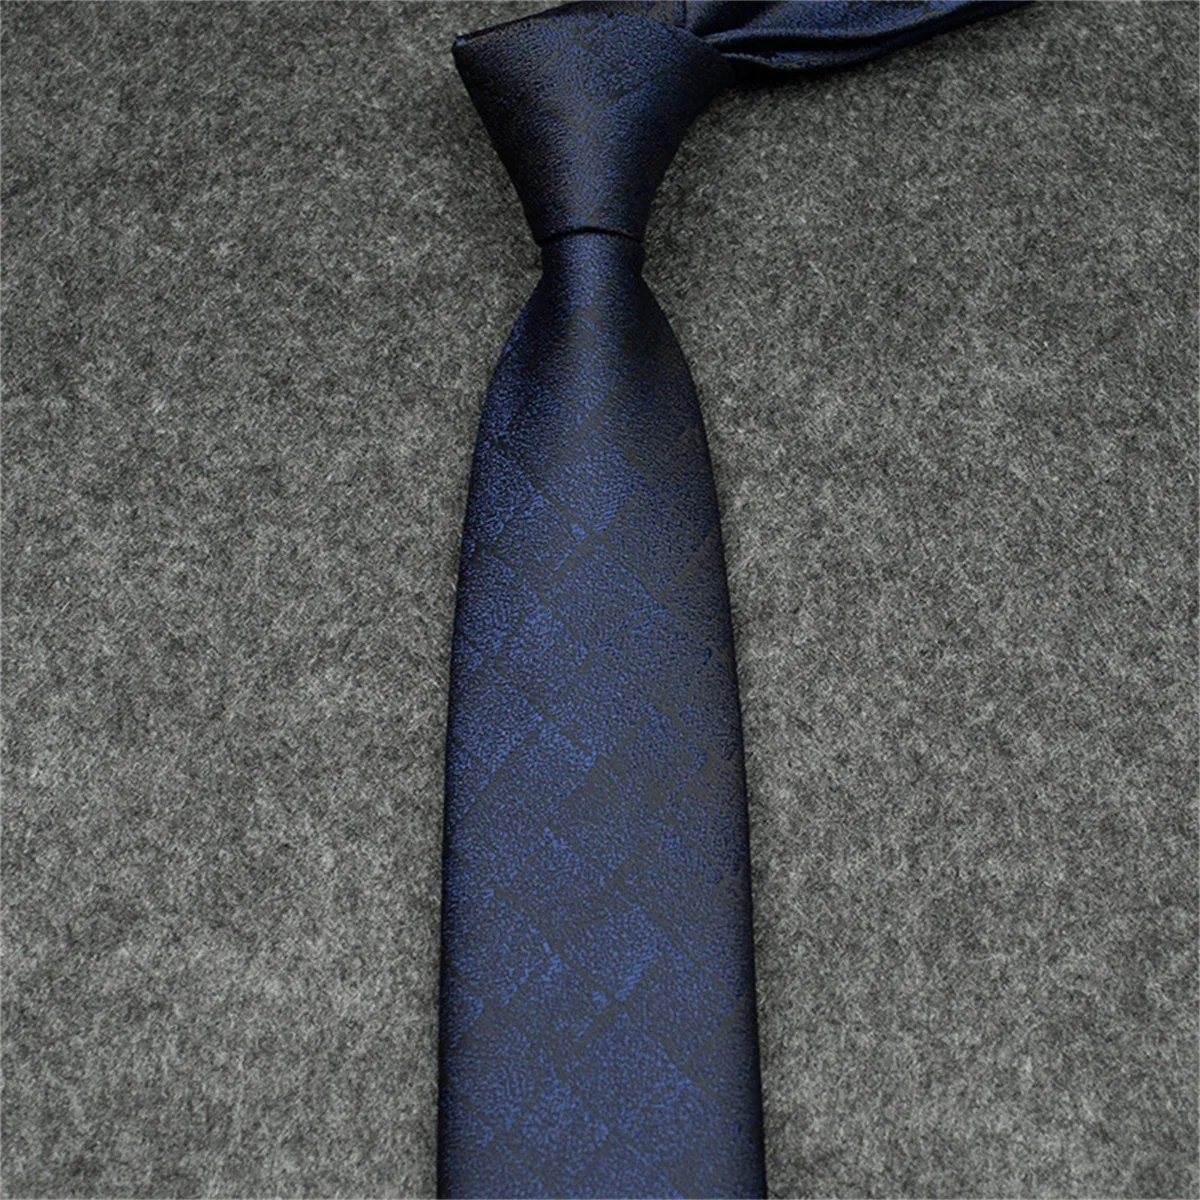 Nouveau Cravates Designer Cravate En Soie Noir Bleu Jacquard Tissé À La Main Pour Hommes De Mariage Casual Et Cravate D'affaires Cravates De Mode Boîte 12355